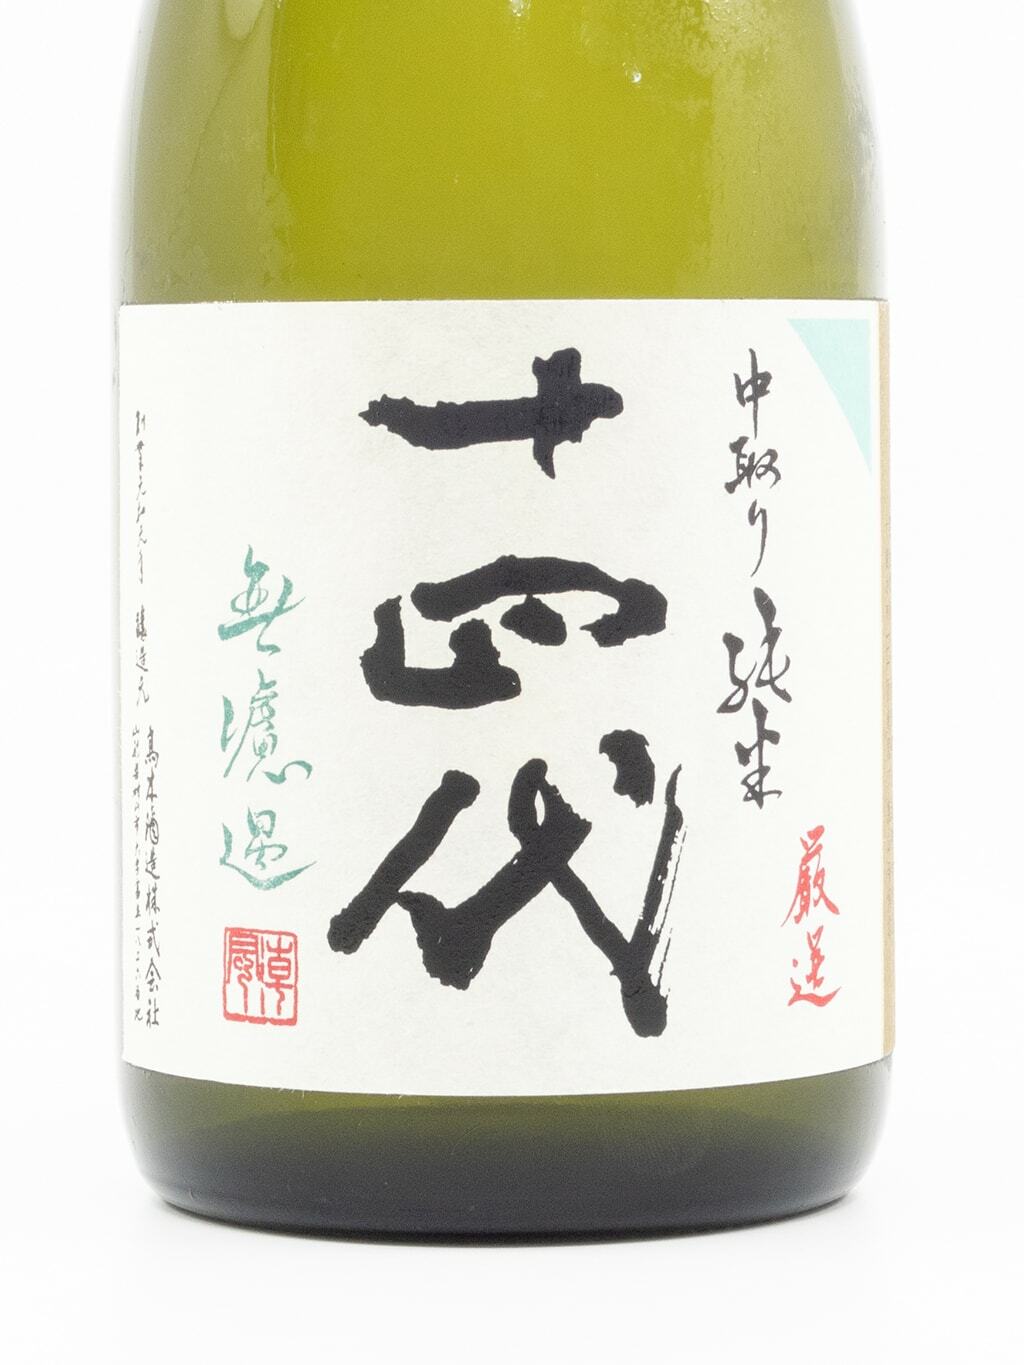 十四代中取り無濾過純米720ml | 酒蛙Sakewa | 日本酒專門店